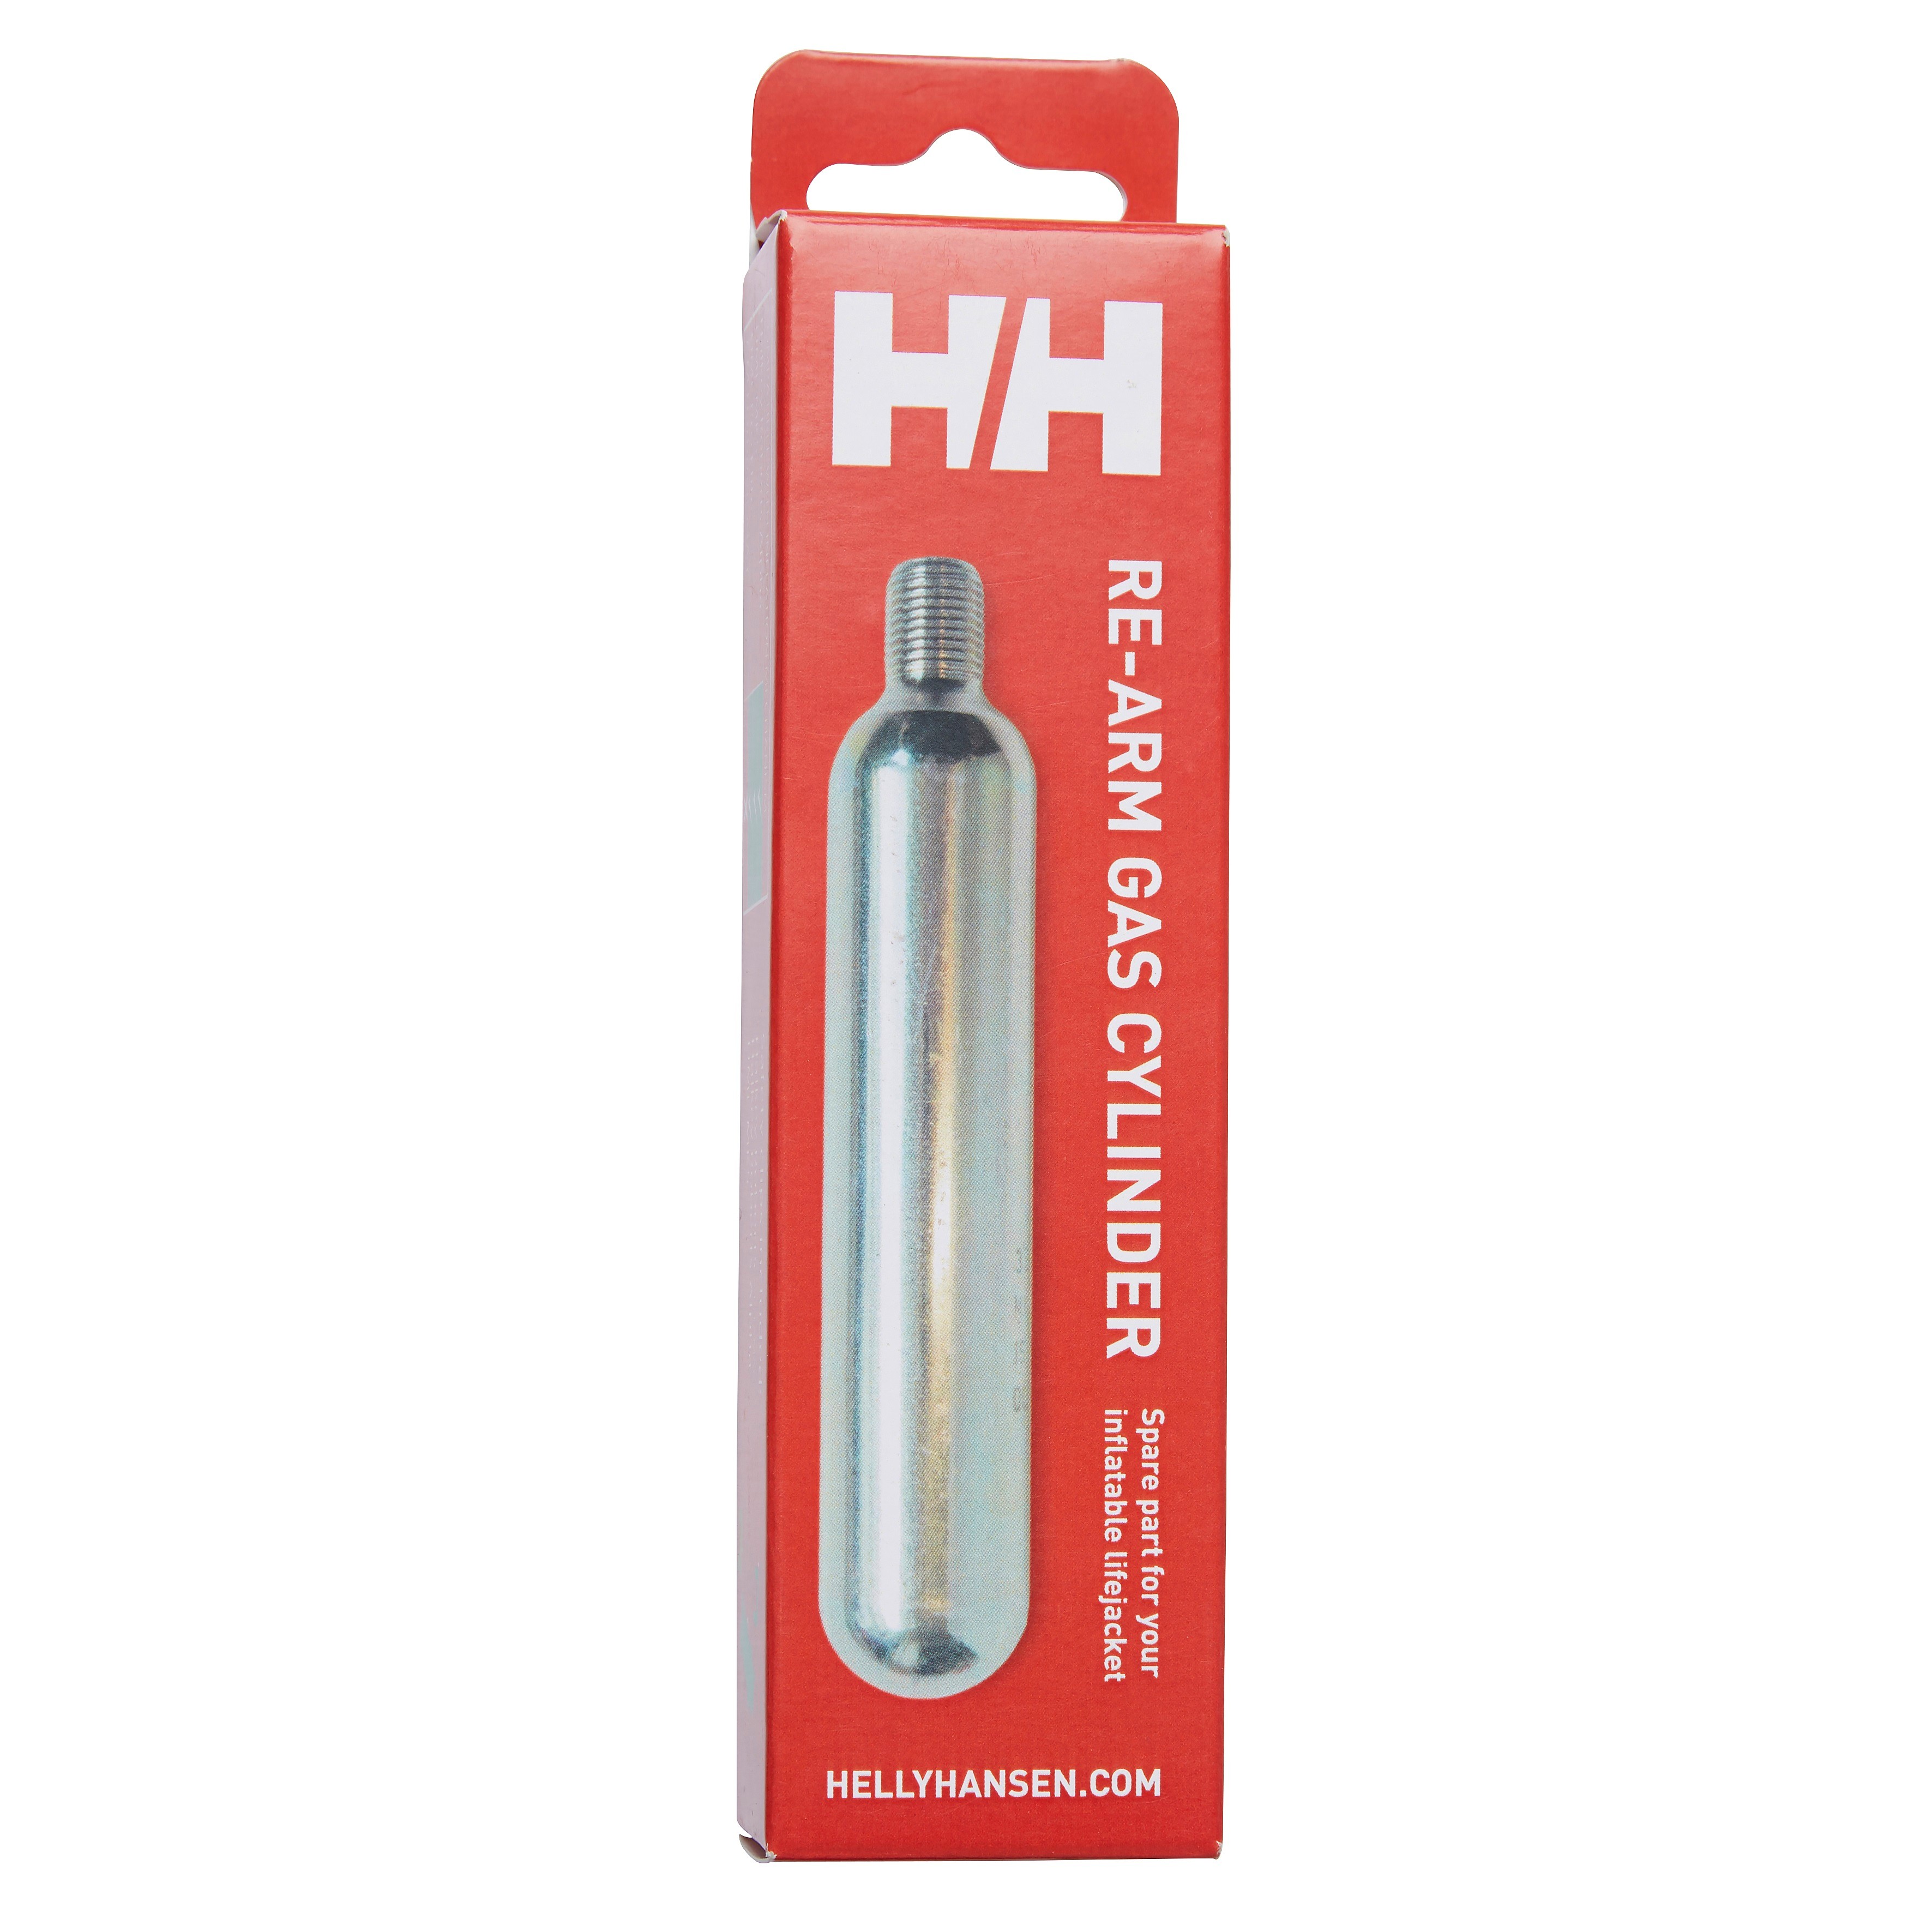 Helly Hansen Re-Arm Gas Cylinder Black